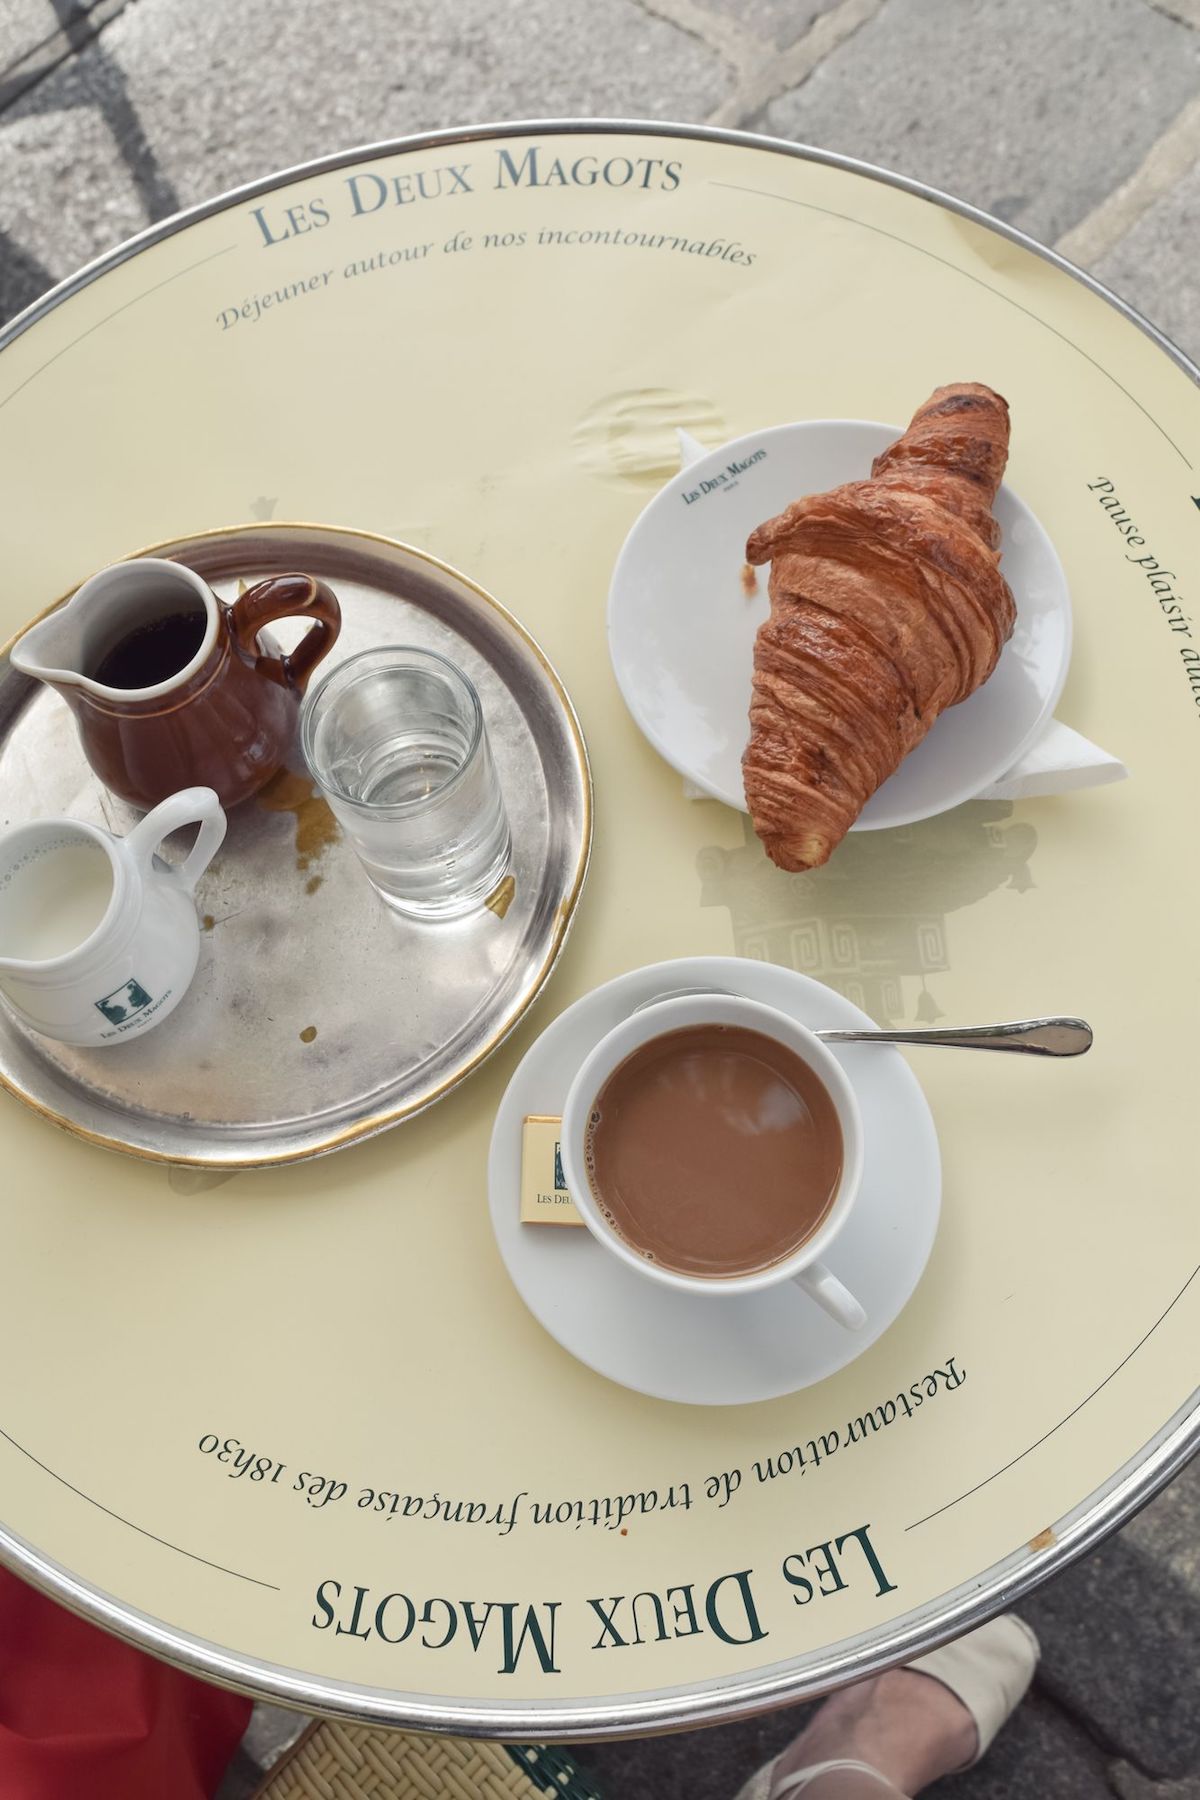 Coffee and croissant at Les Deux Magots, Paris